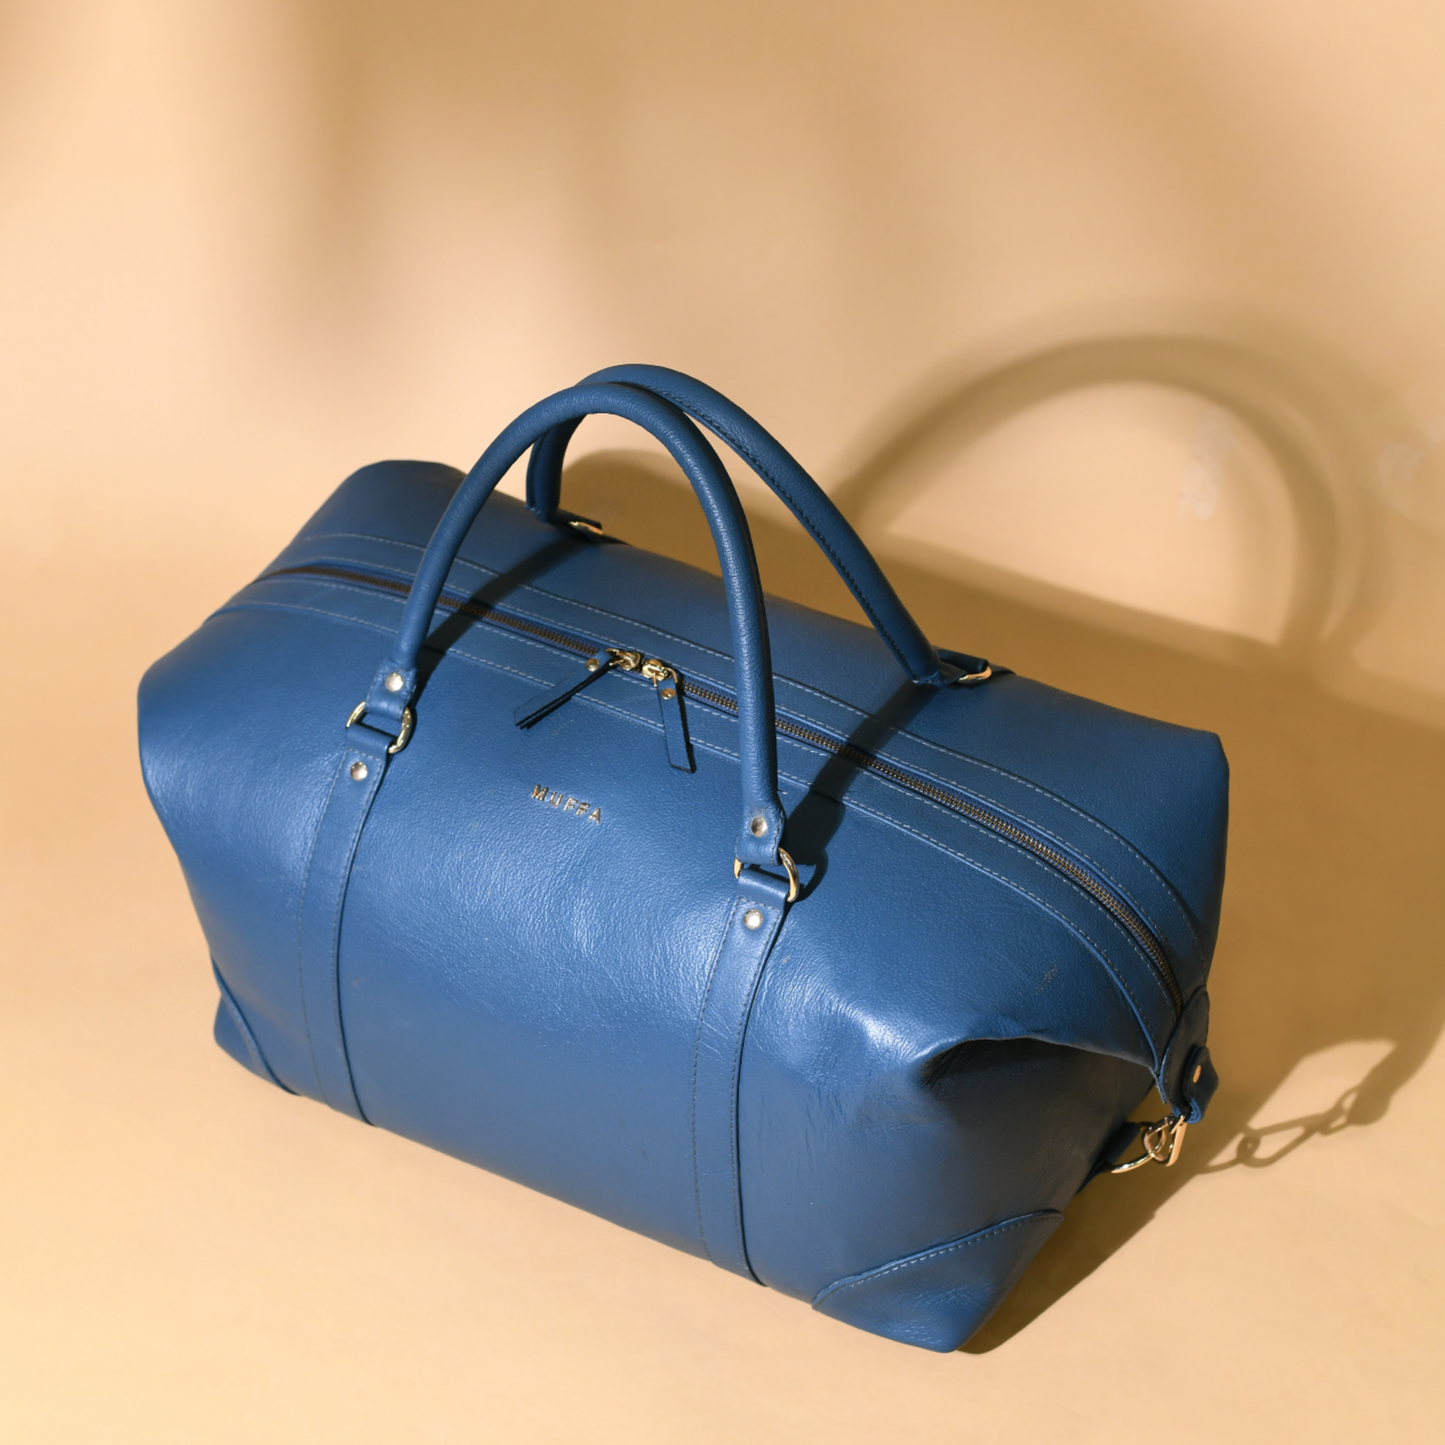 Travel weekender bag - I blue